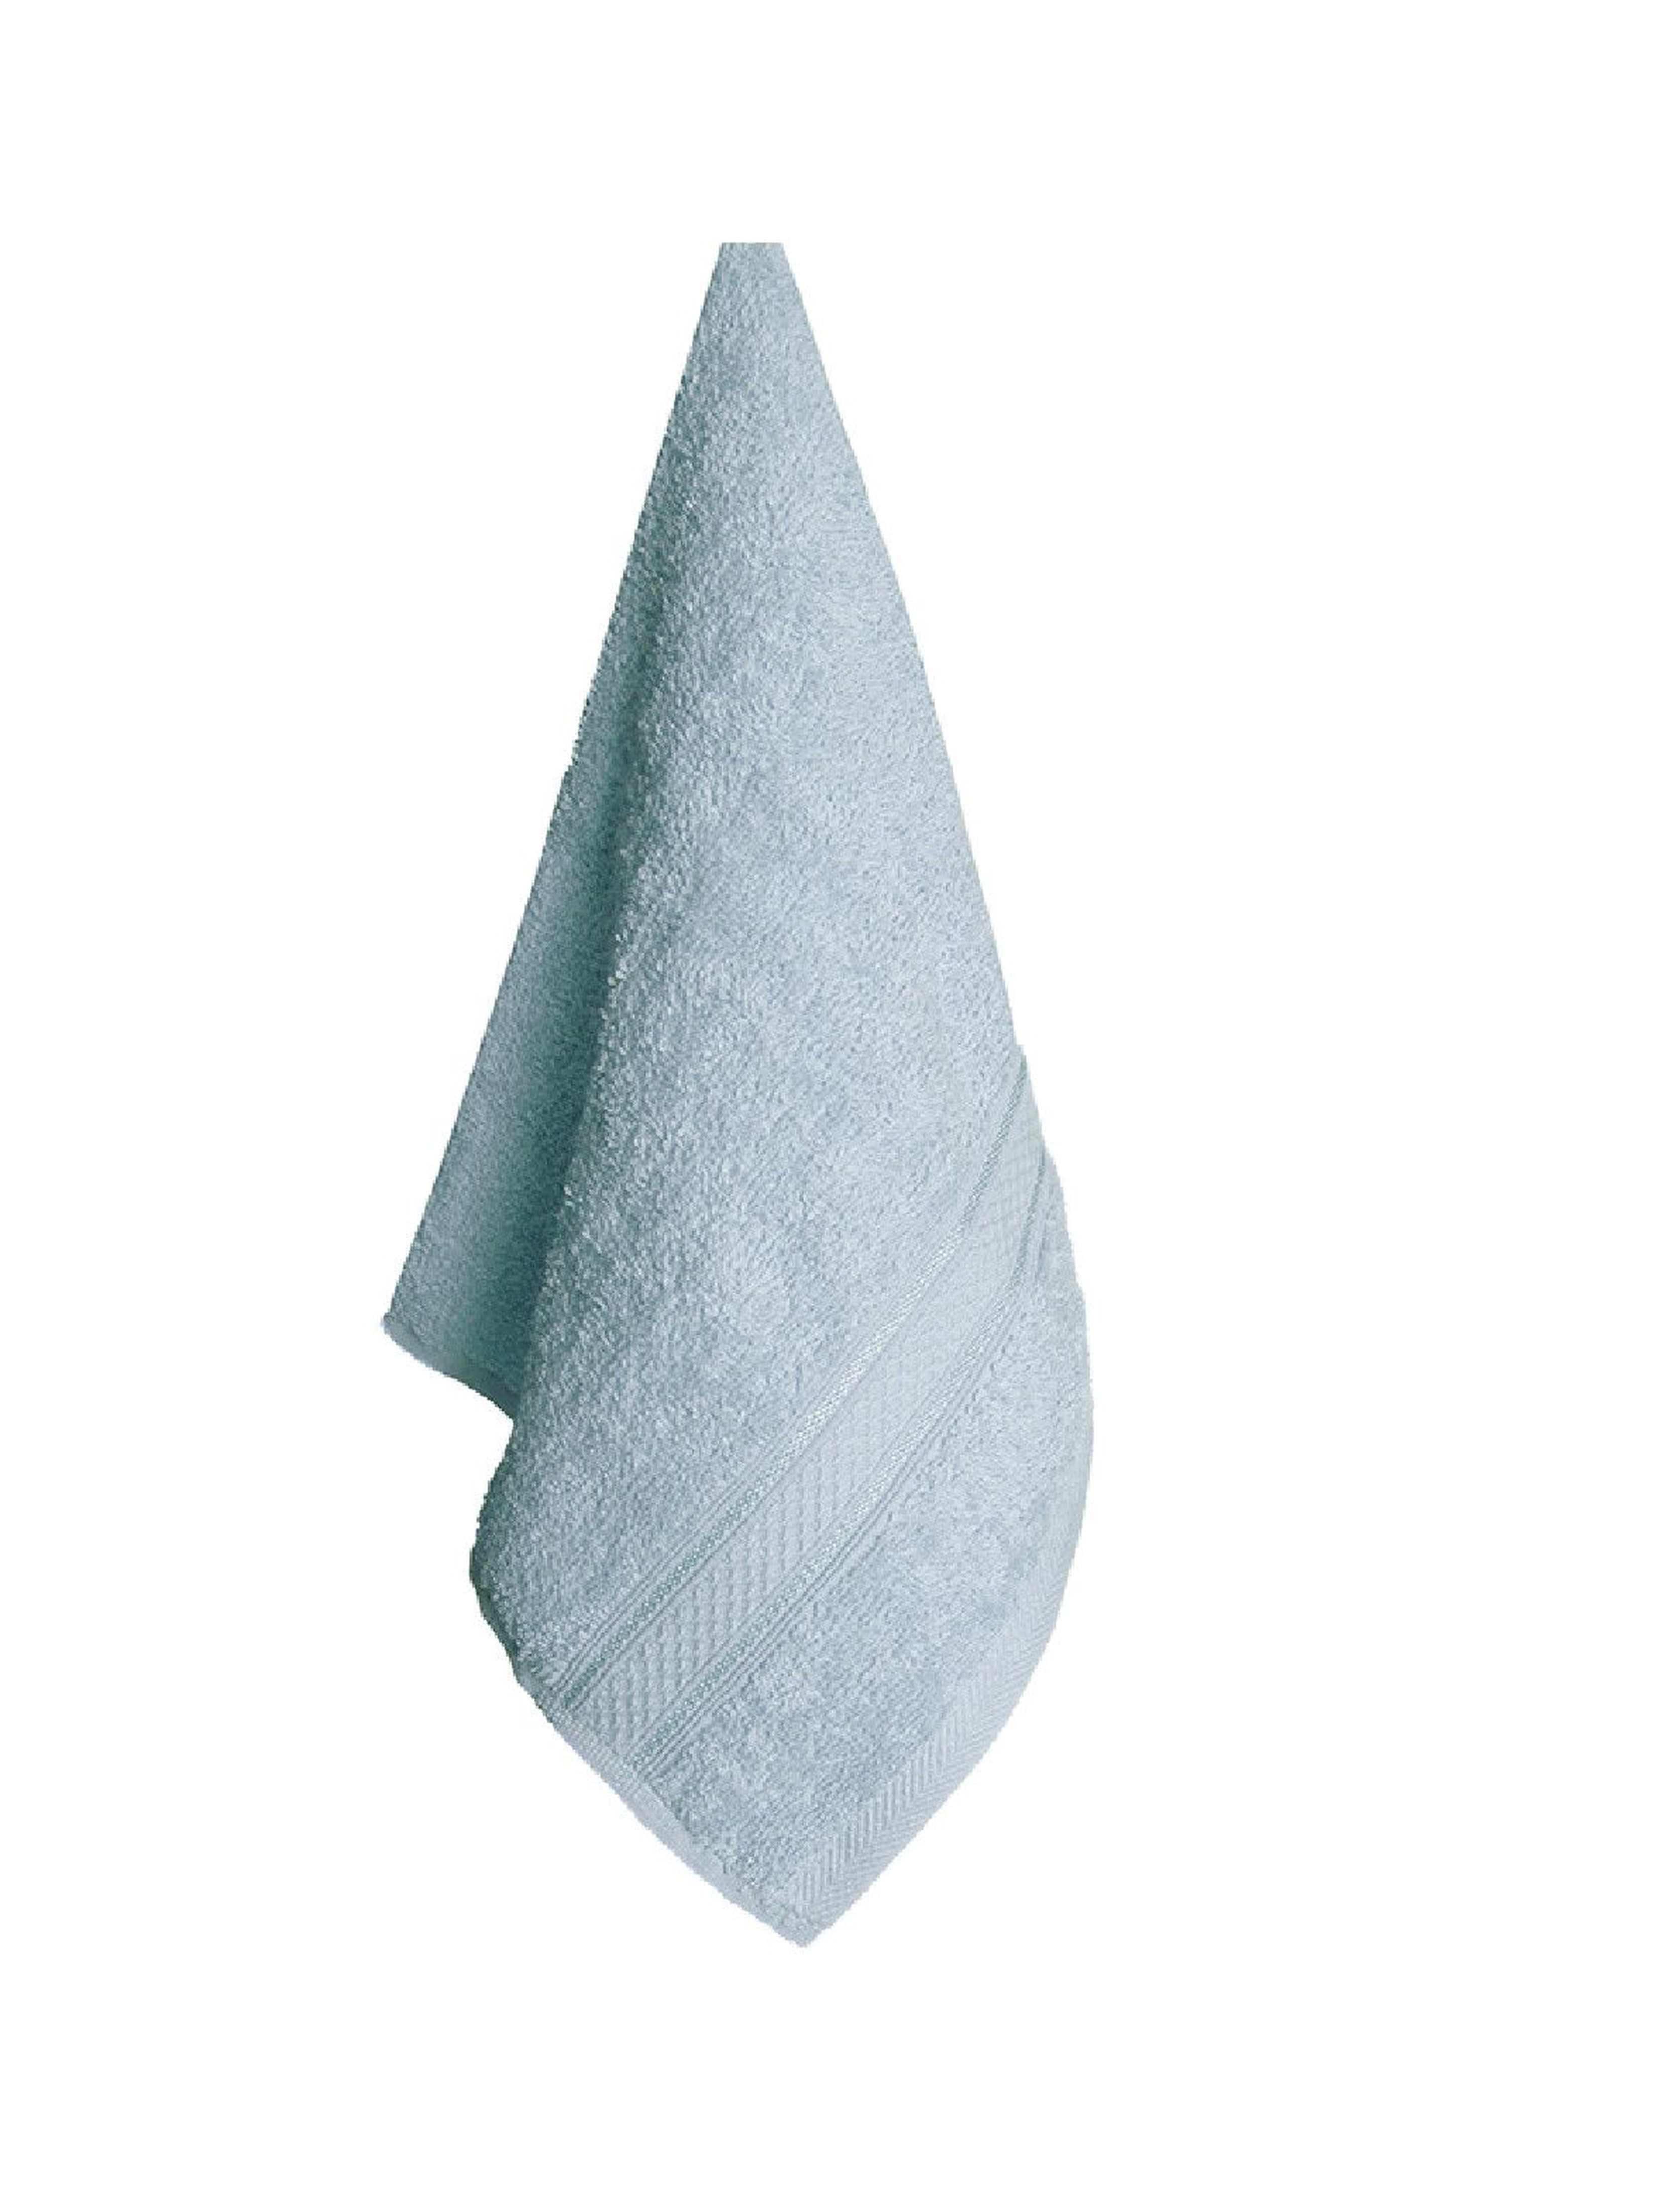 Ręcznik bawełniany VENA niebieski 50x90cm